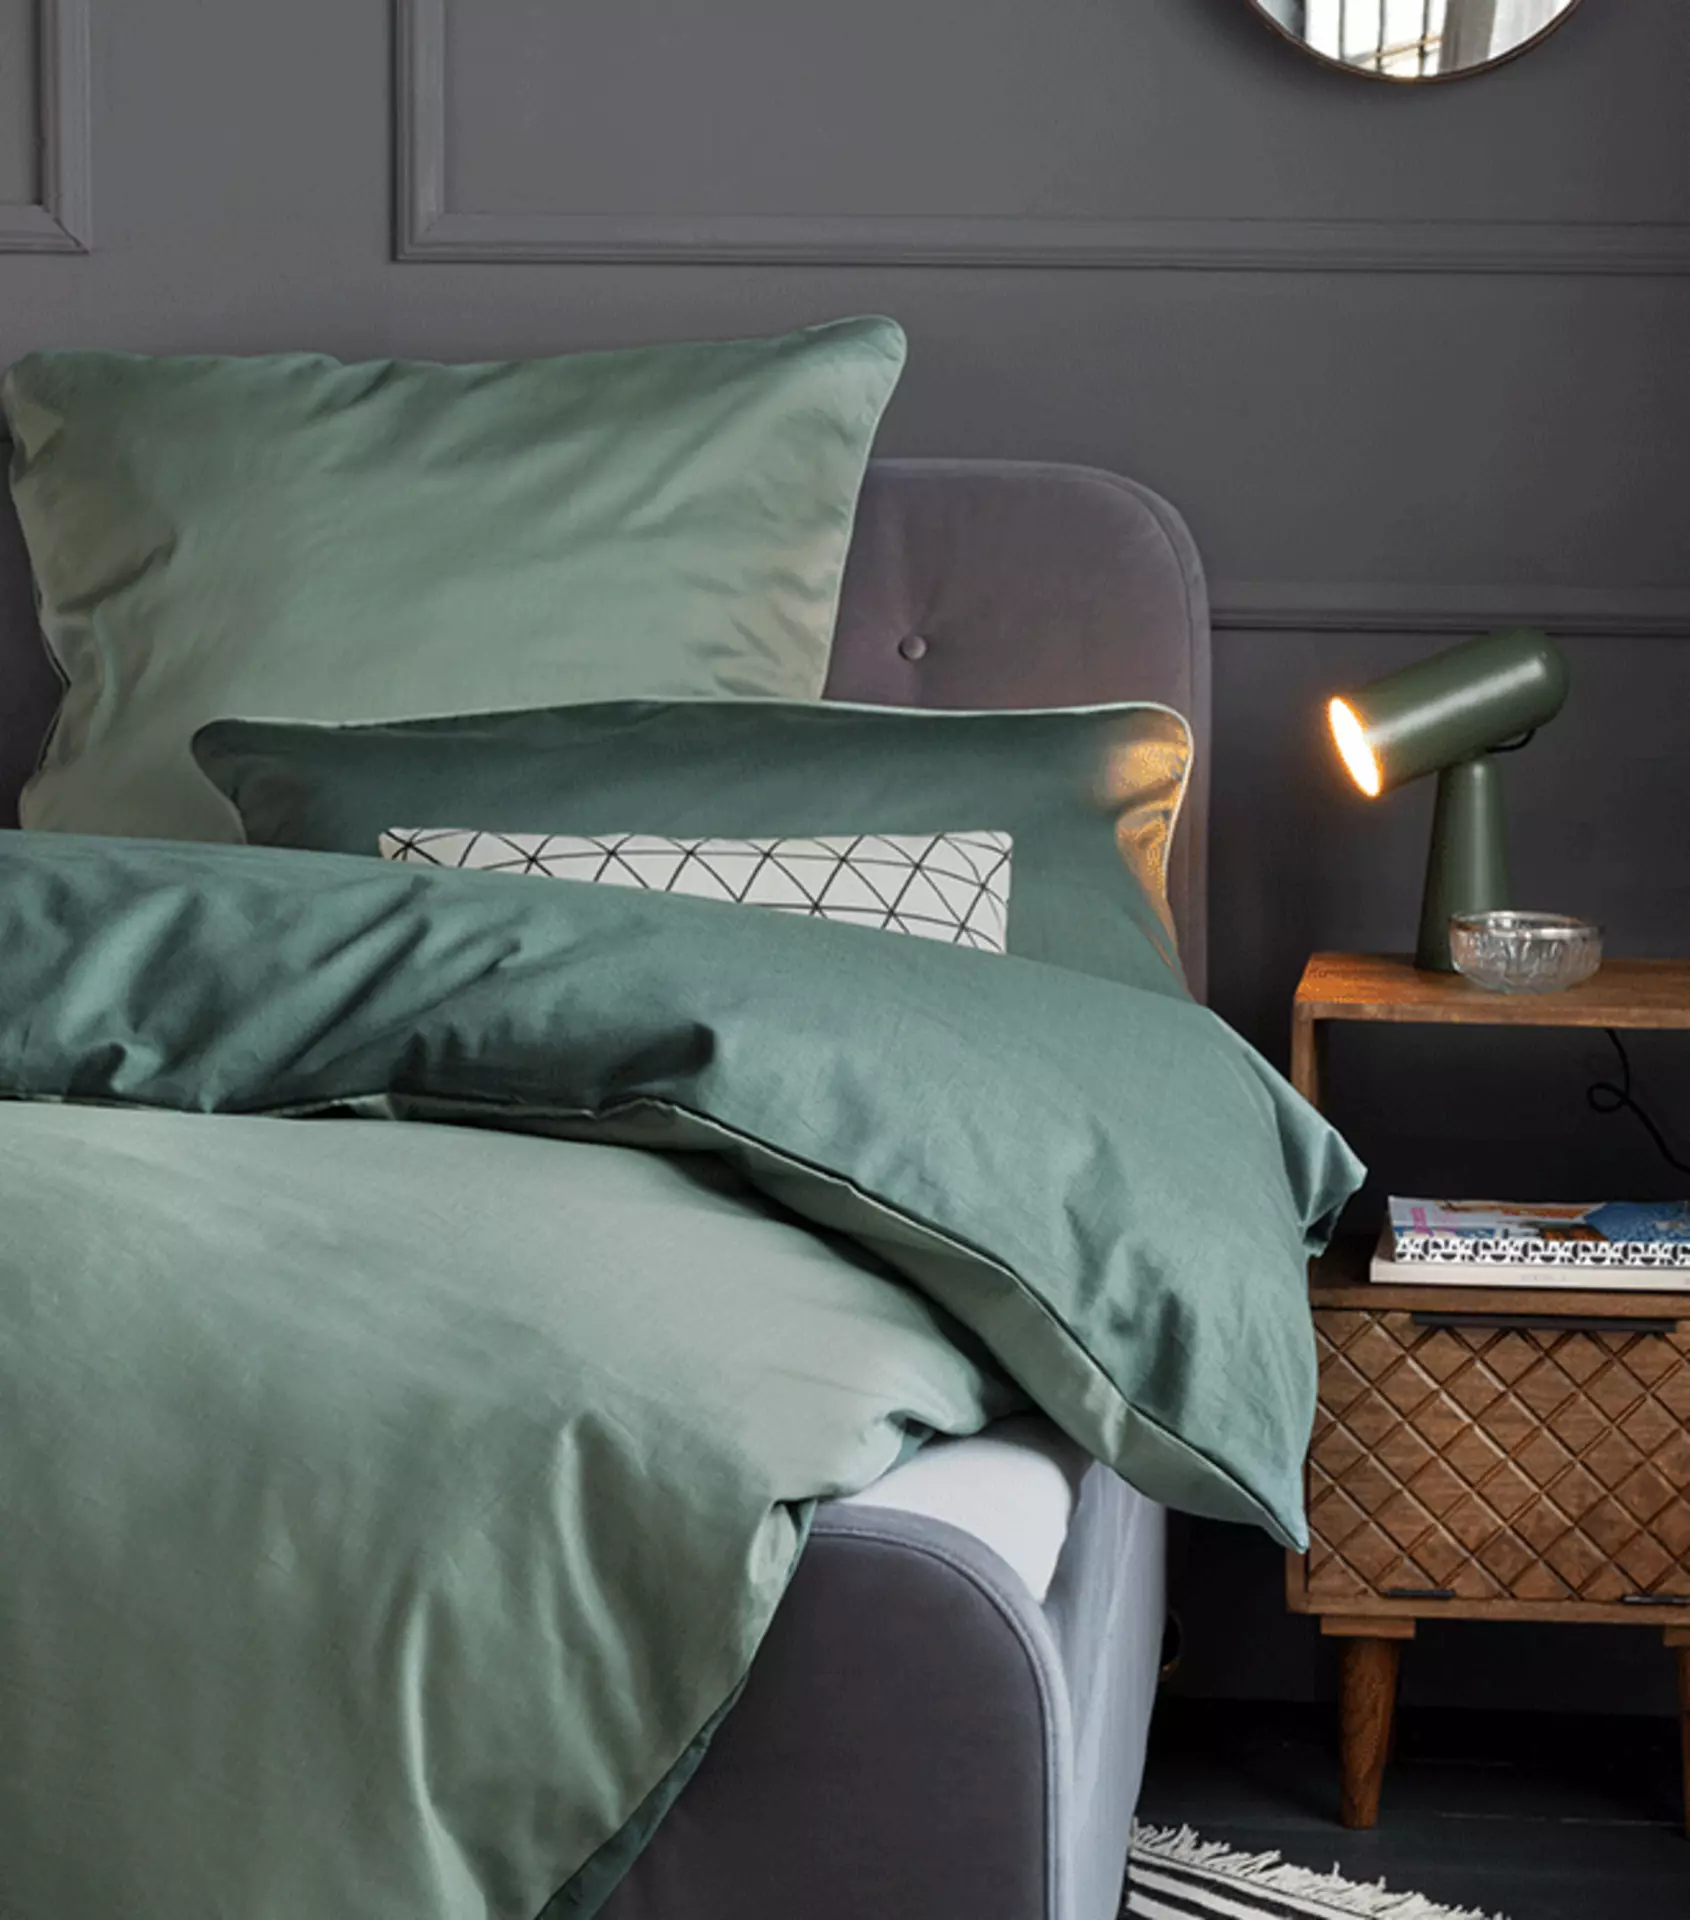 Royal Green im Schlafzimmer mit edler Bettwäsche in gedecktem Grün